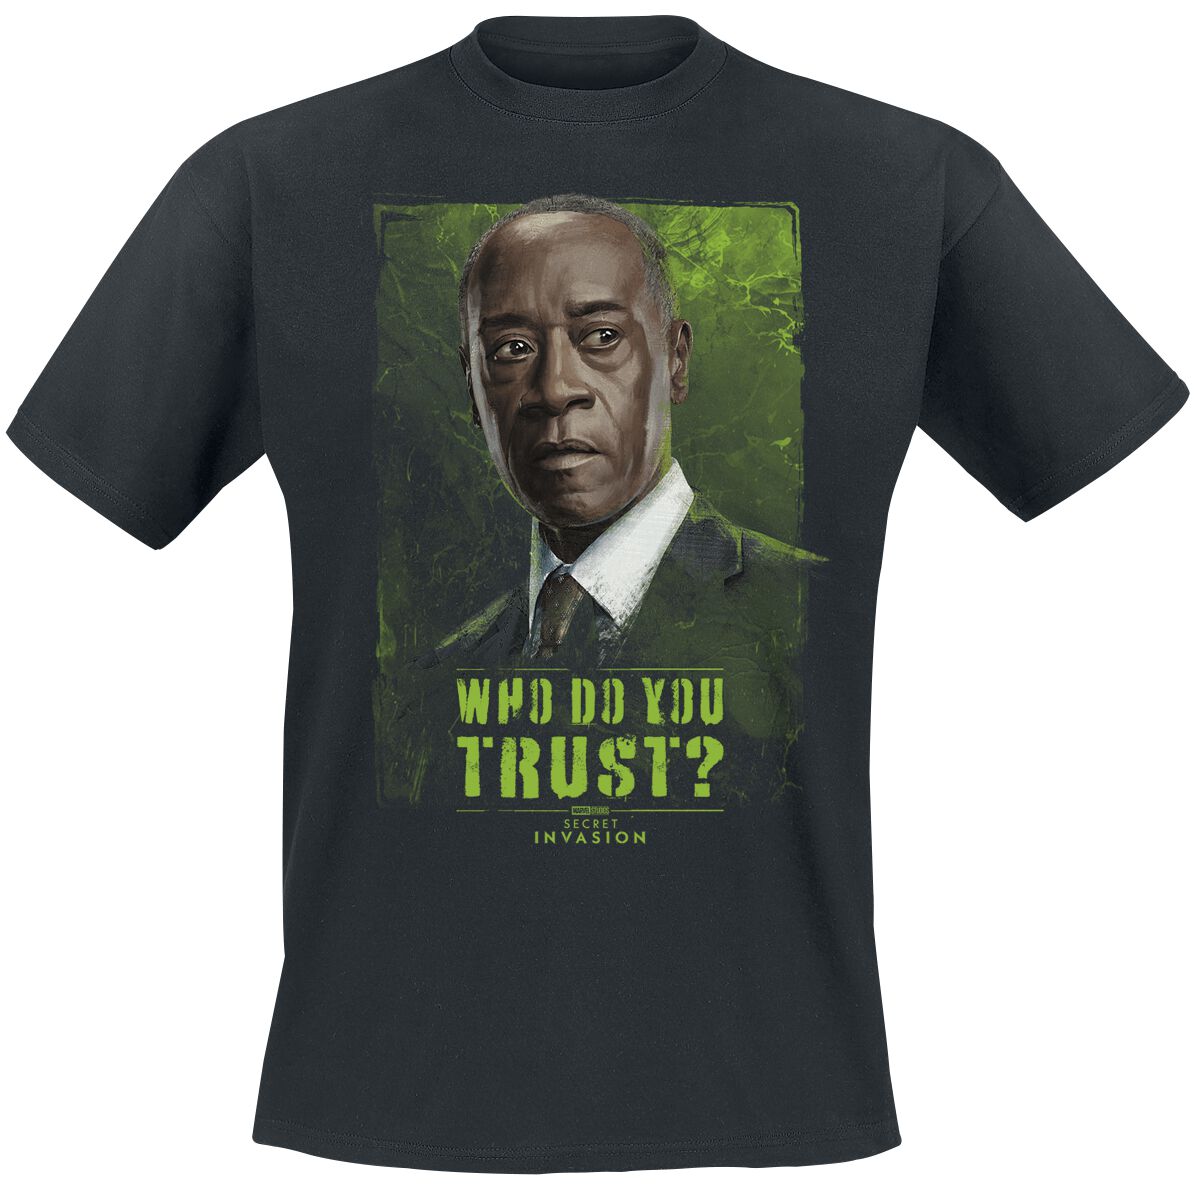 Secret Invasion - Marvel T-Shirt - Who Do You Trust? James - S bis 3XL - für Männer - Größe S - schwarz  - EMP exklusives Merchandise!